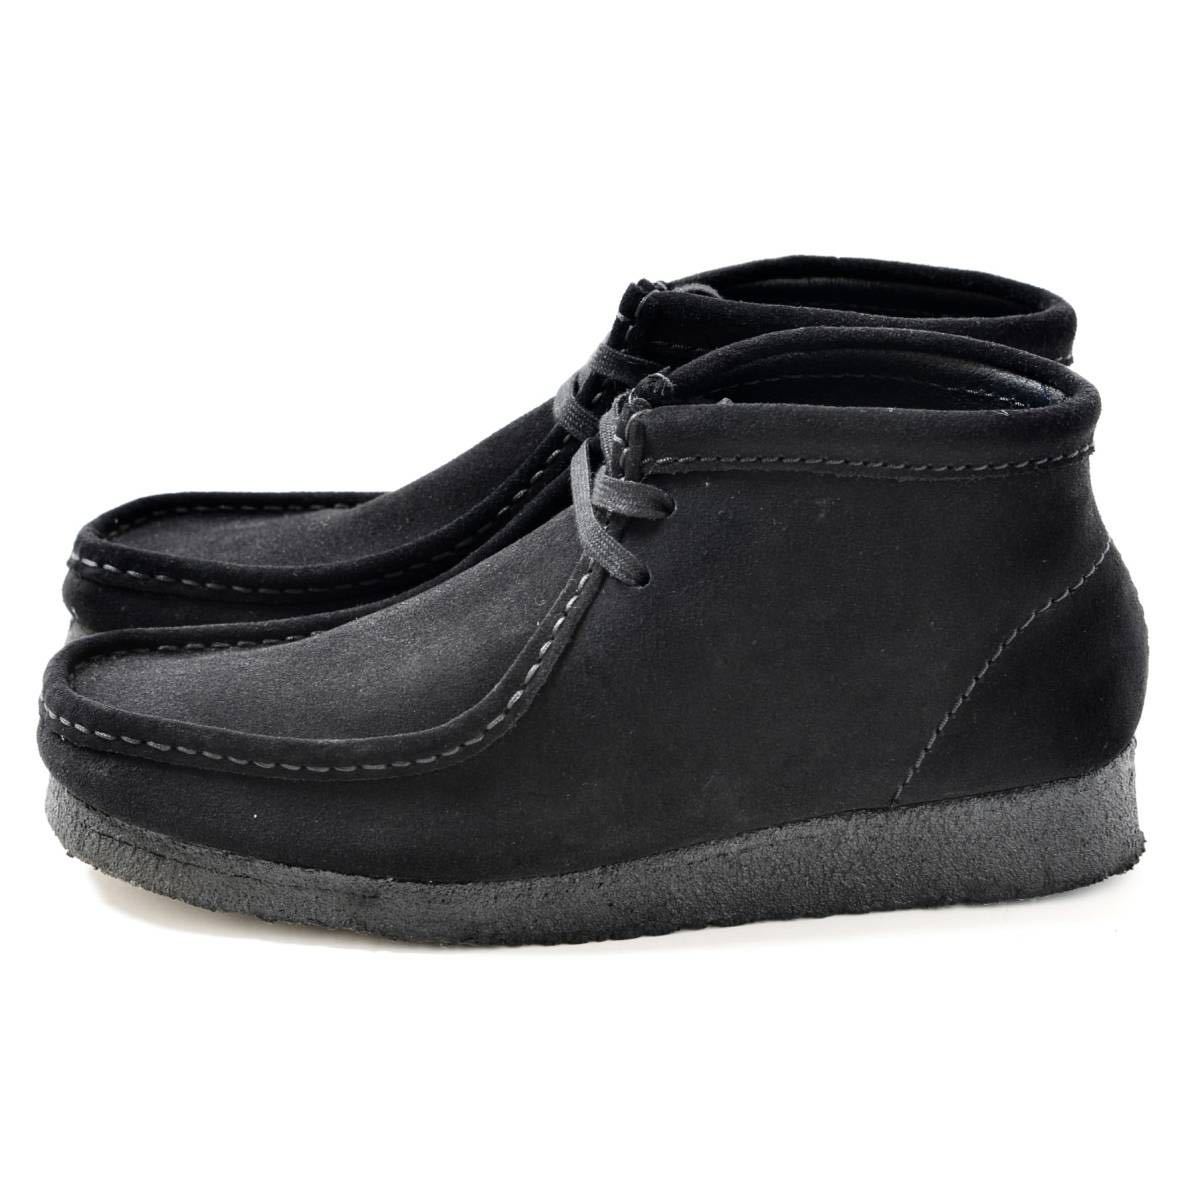 【美品】クラークス ワラビー ブーツ ハイカット スエード 黒 ブラック UK6 Clarks wallabee boot